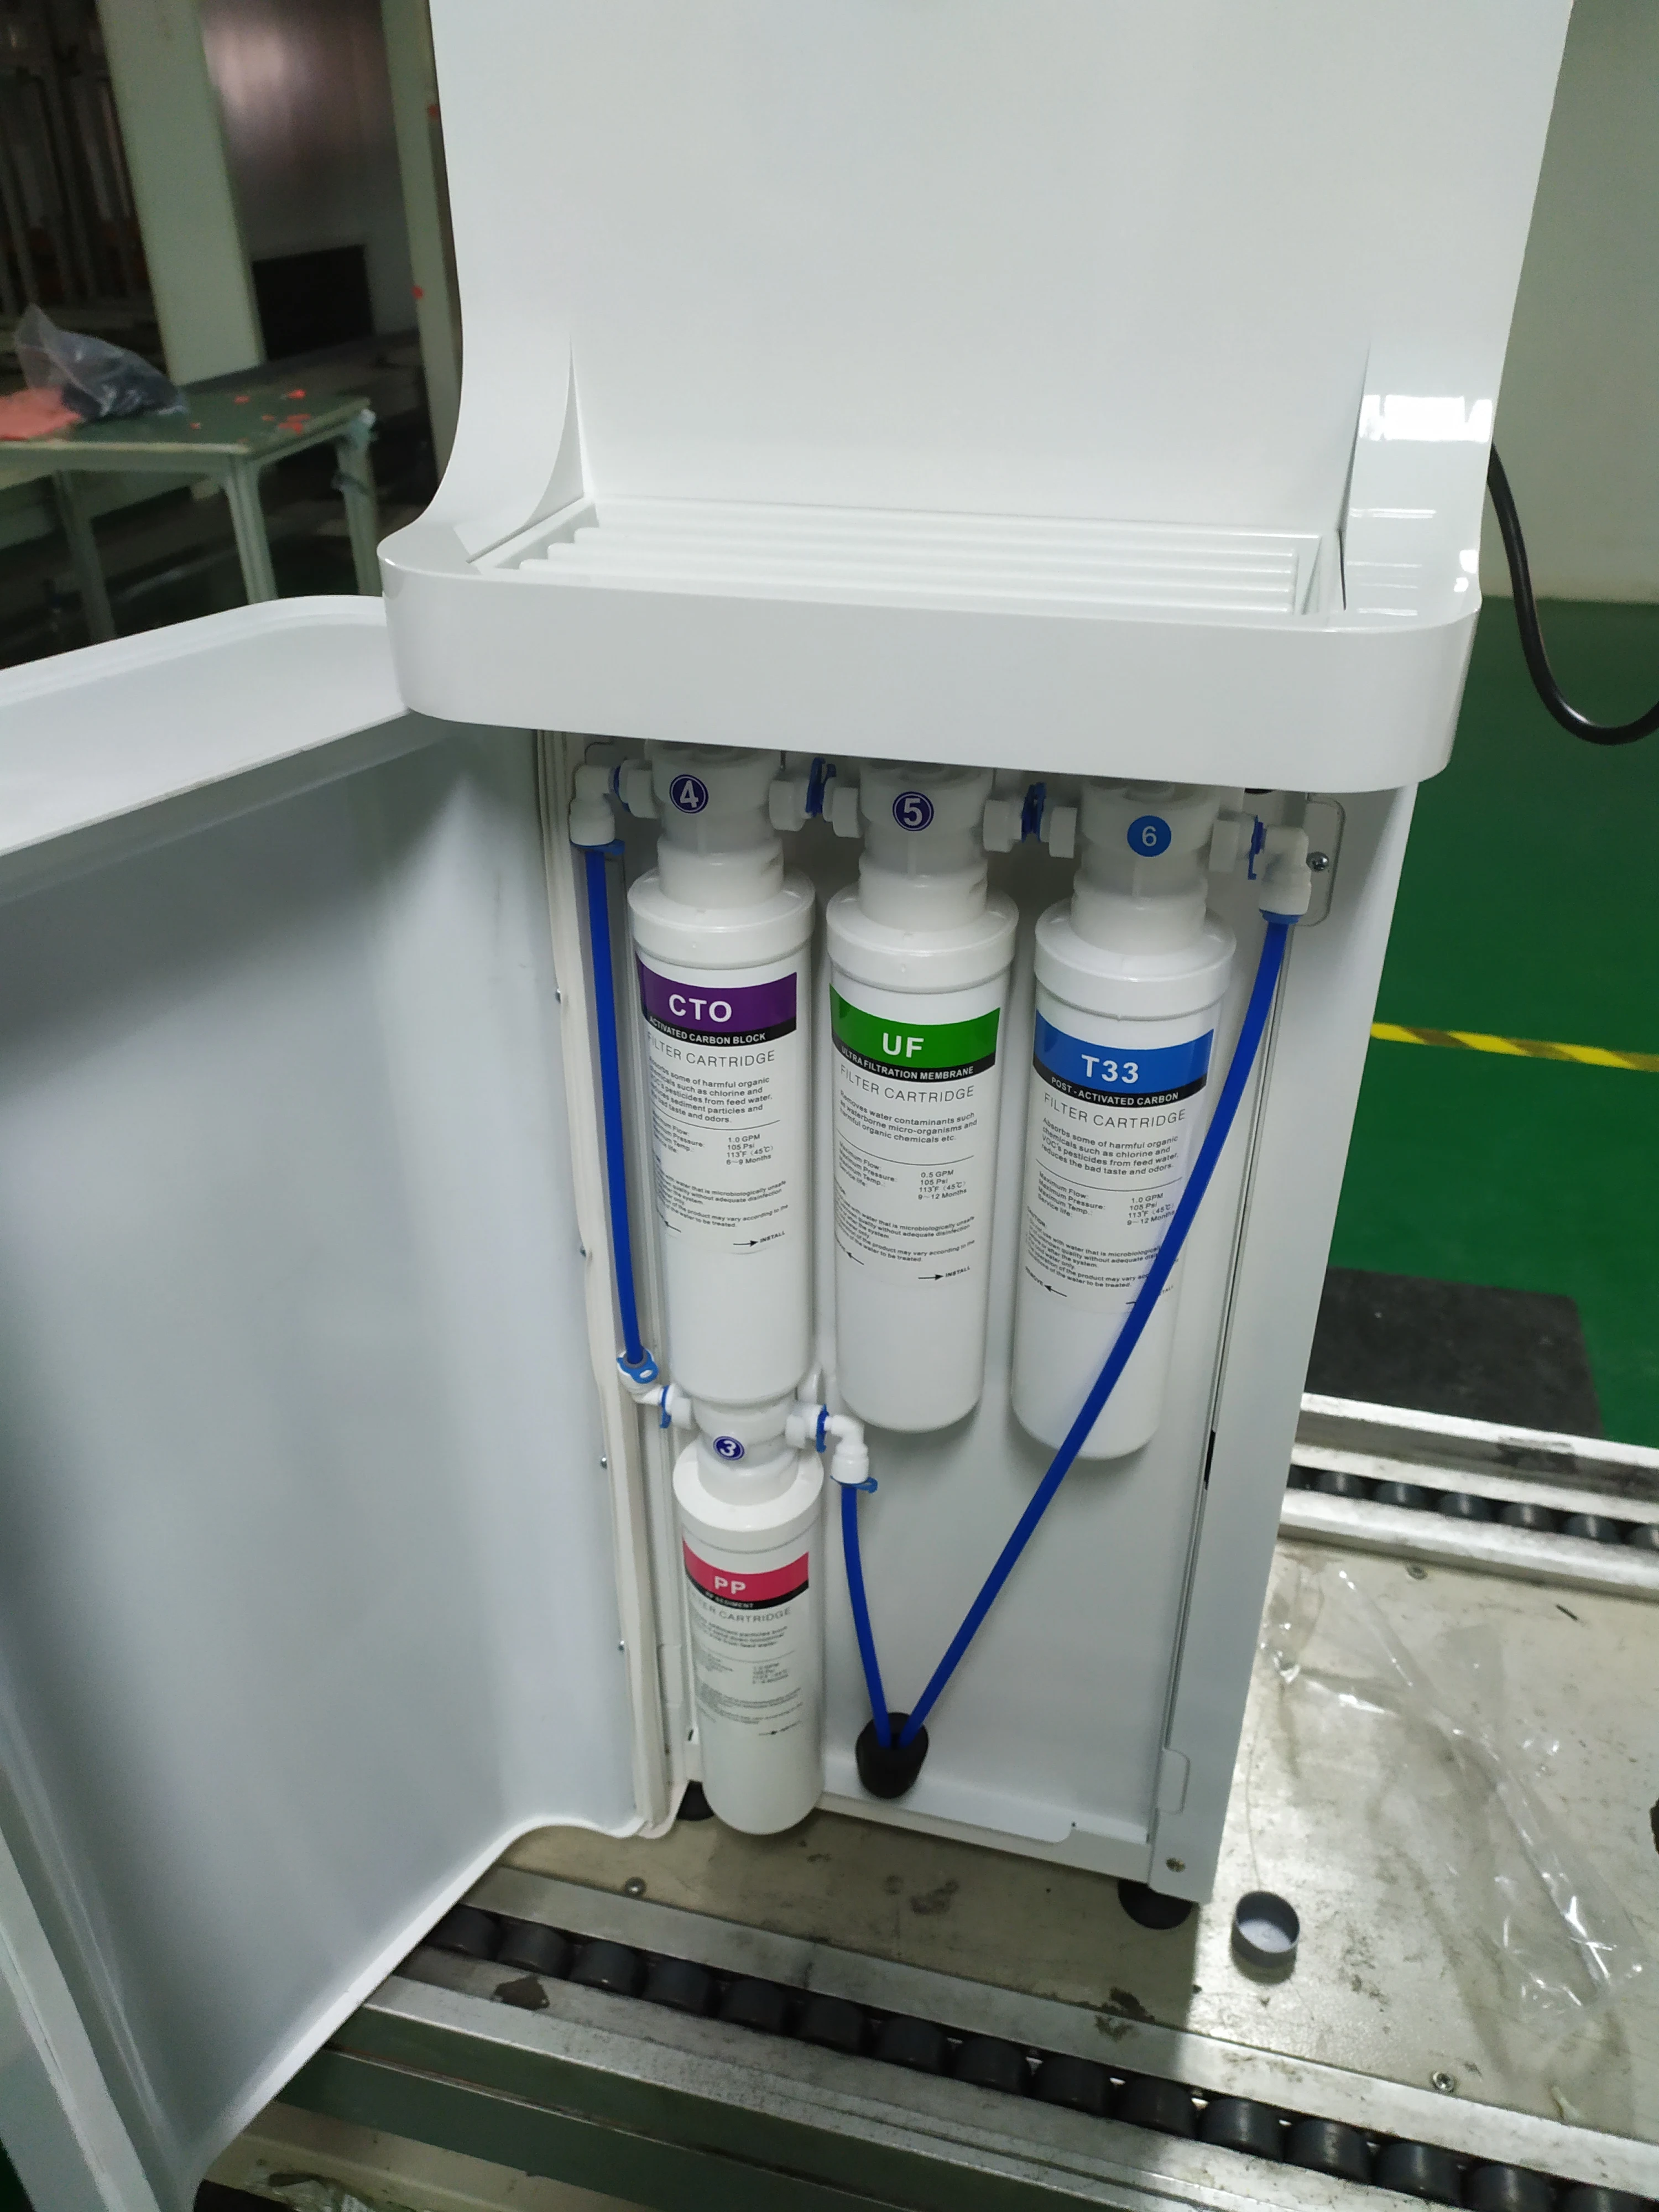 
Generador de agua atmosferica atmospheric air water generator from air machine 